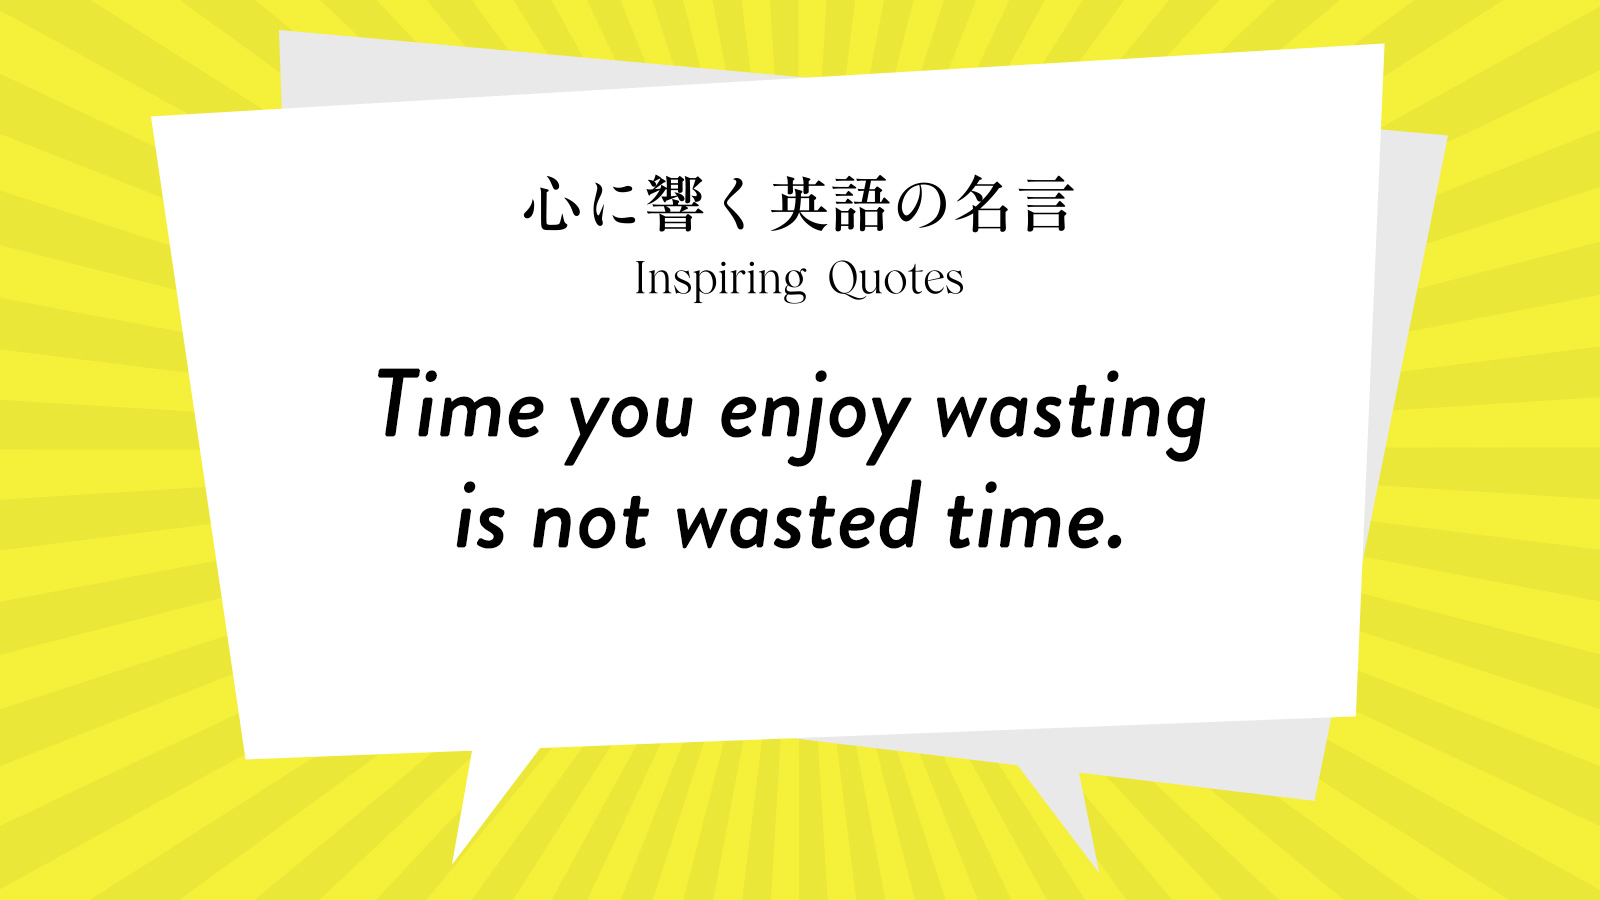 今週の名言 “Time you enjoy wasting is not wasted time.” | Inspiring Quotes: 心に響く英語の名言